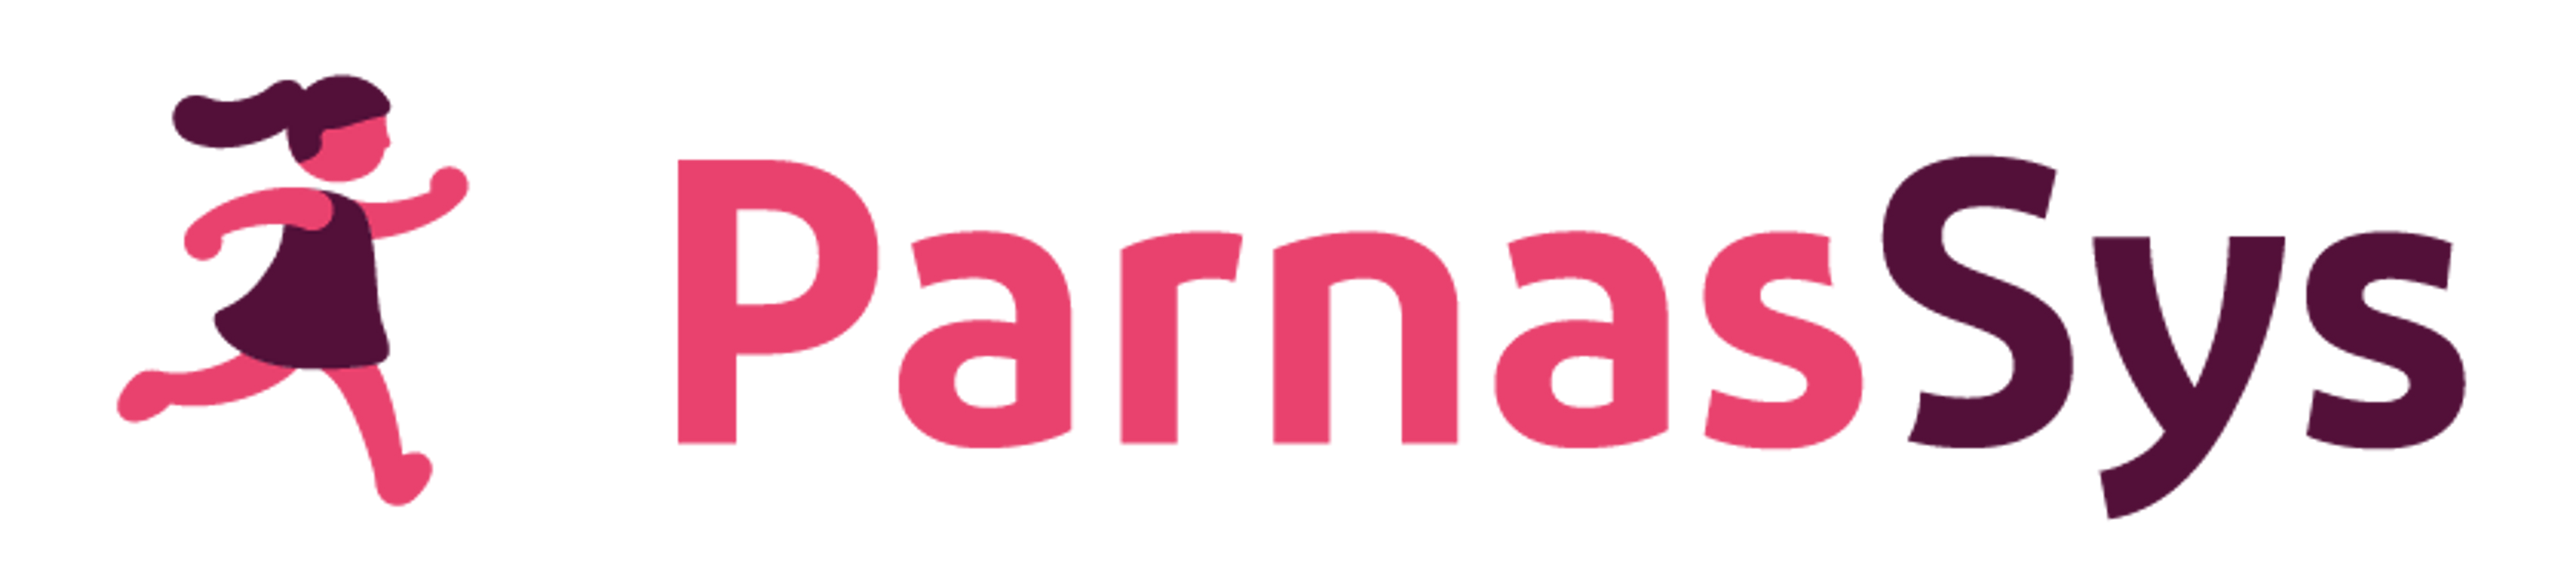 ParnasSys logo